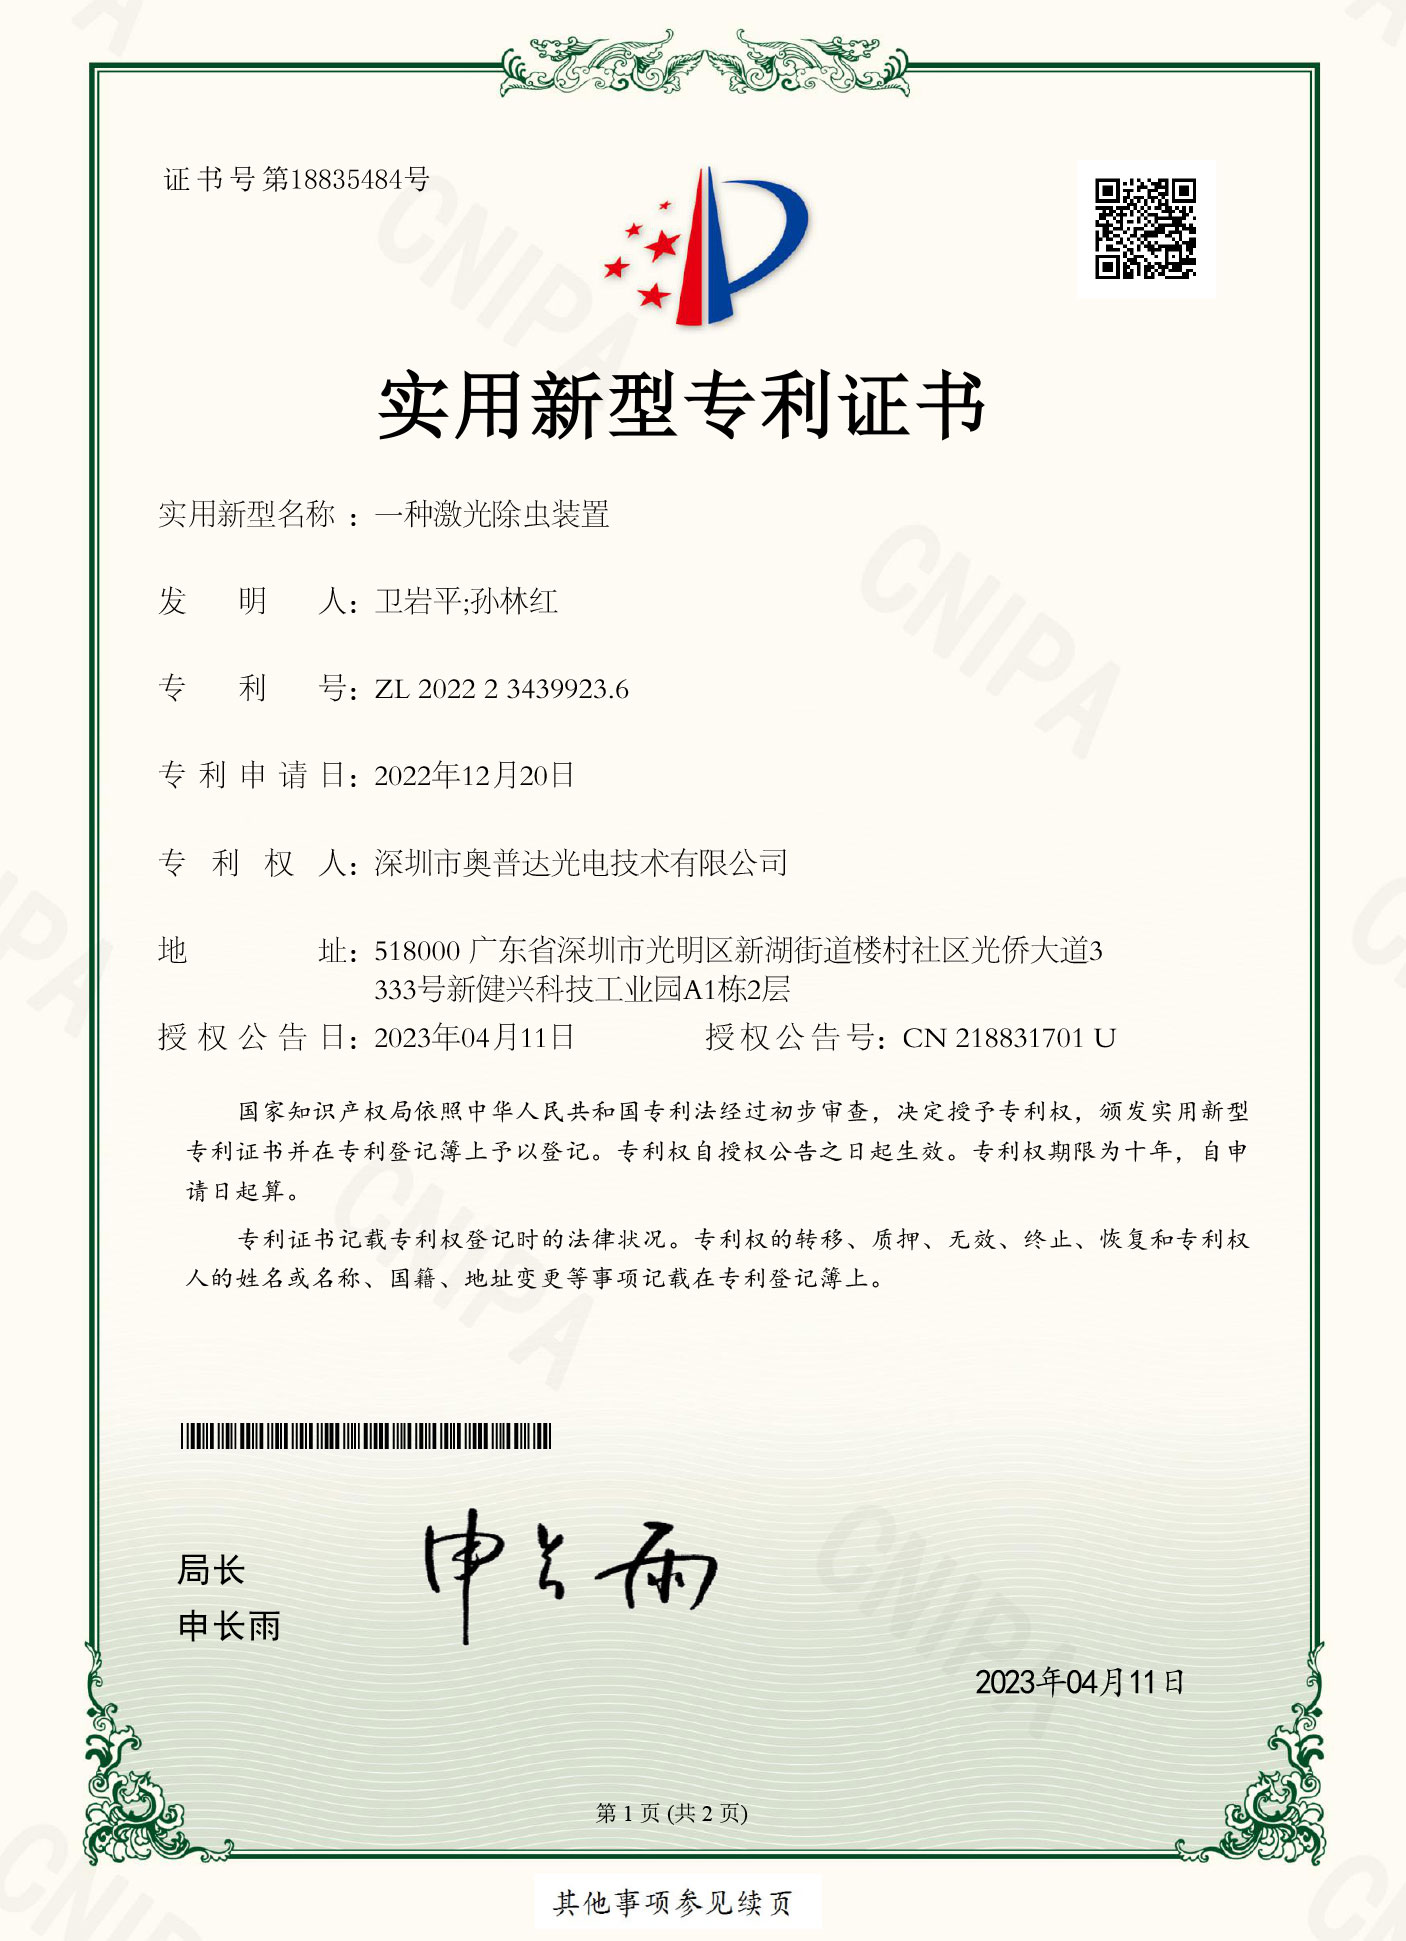 深圳市奥普达光电技术有限公司-2022234399236-实用新型专利证书(签章)